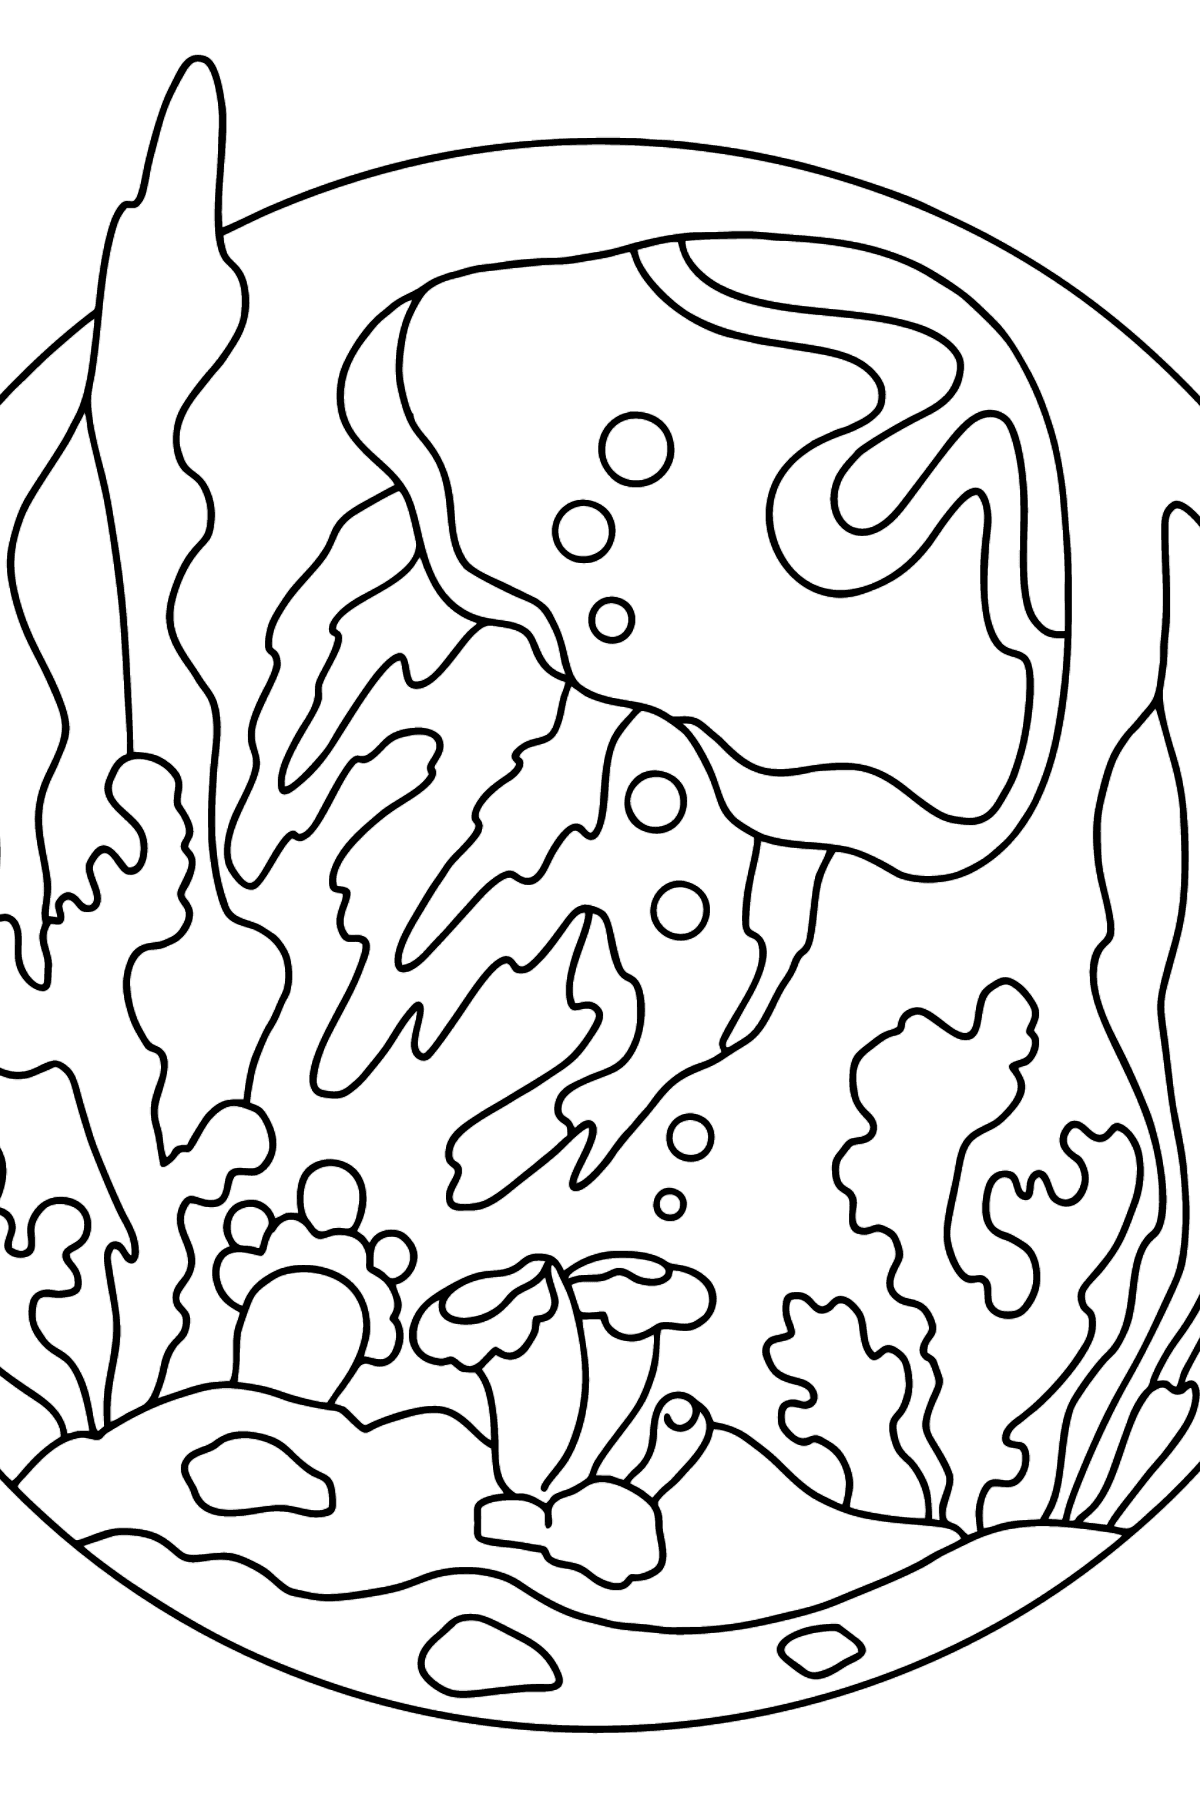 Boyama sayfası denizanası boyama sayfası - Boyamalar çocuklar için